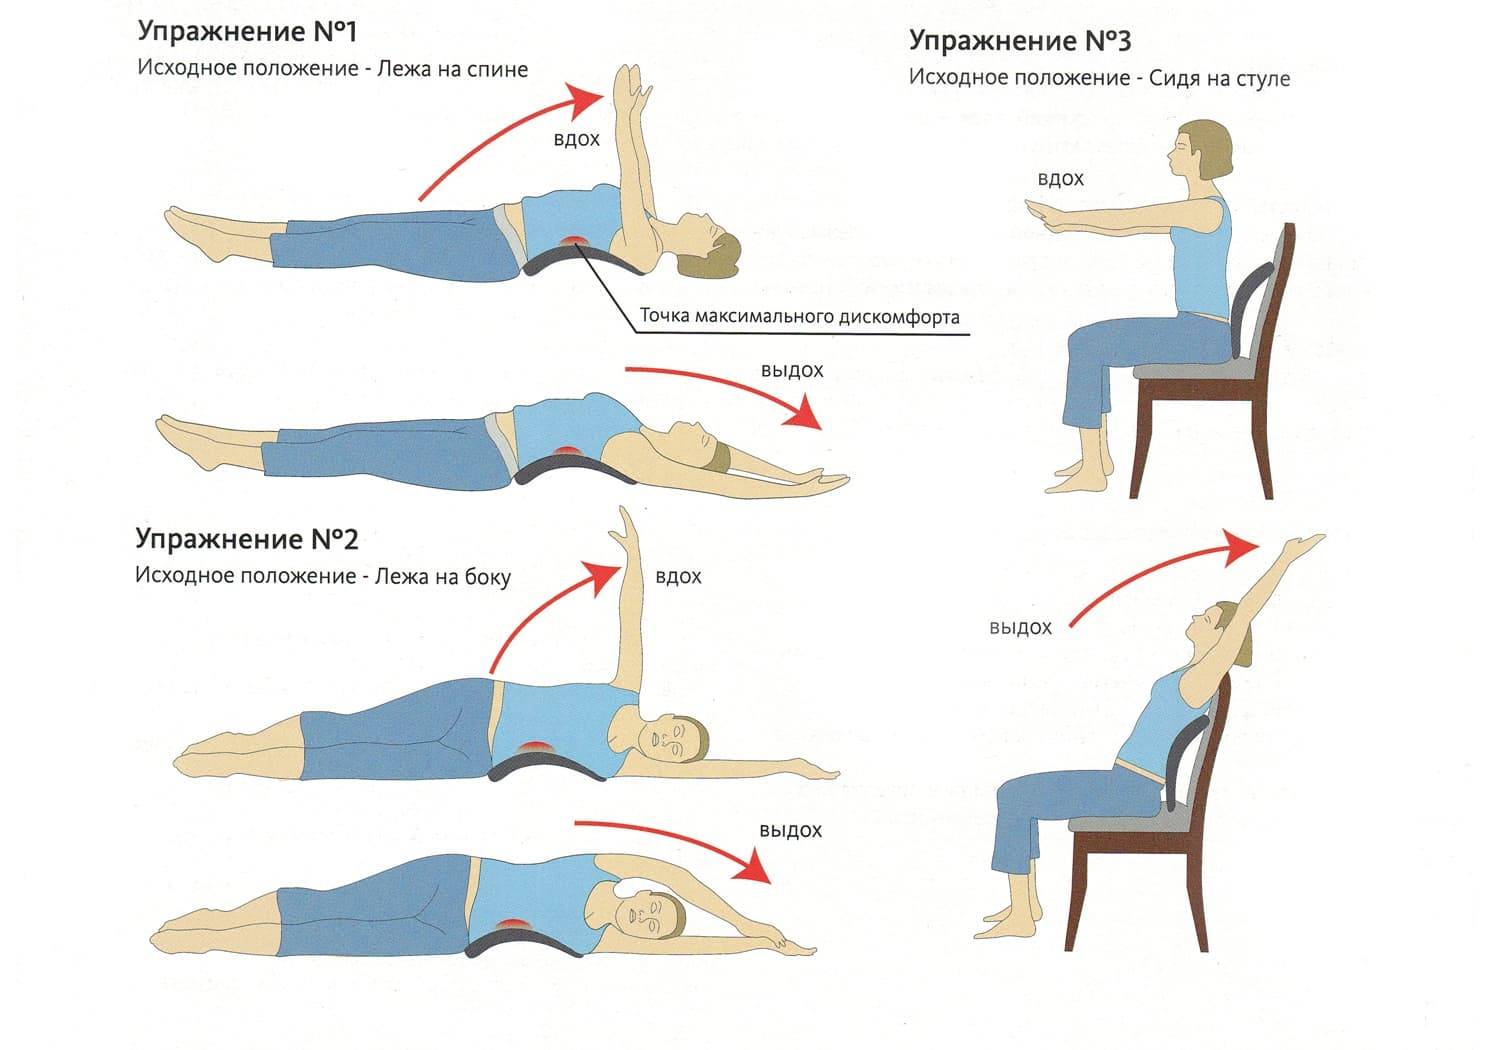 Упражнения при шейном остеохондрозе: правила выполнения лечебной гимнастики для укрепления мышц позвоночника